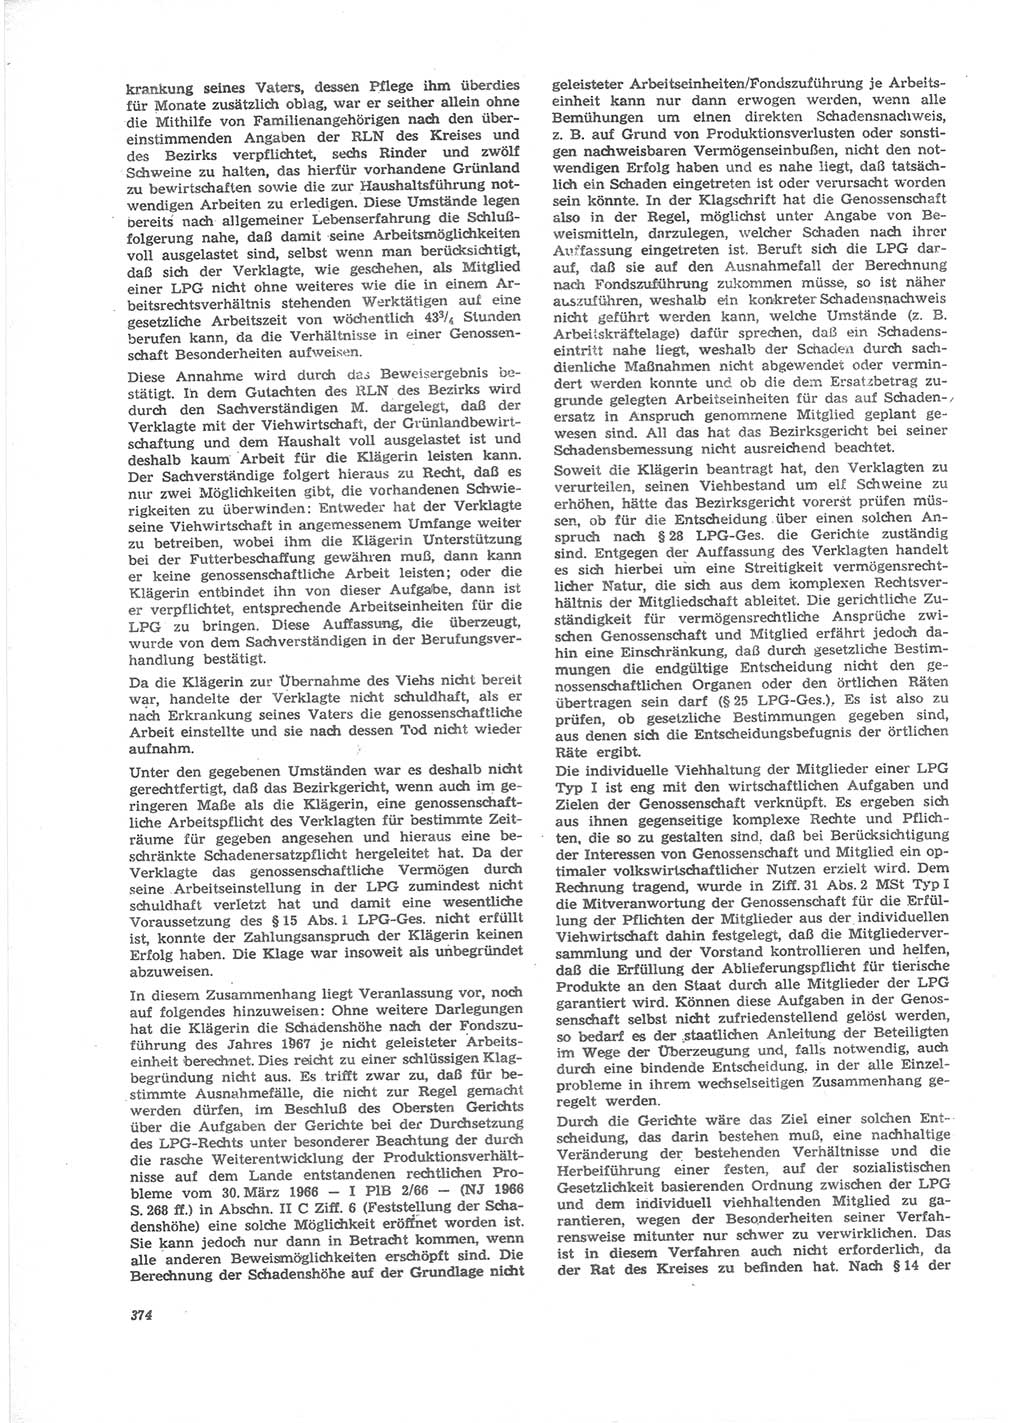 Neue Justiz (NJ), Zeitschrift für Recht und Rechtswissenschaft [Deutsche Demokratische Republik (DDR)], 24. Jahrgang 1970, Seite 374 (NJ DDR 1970, S. 374)